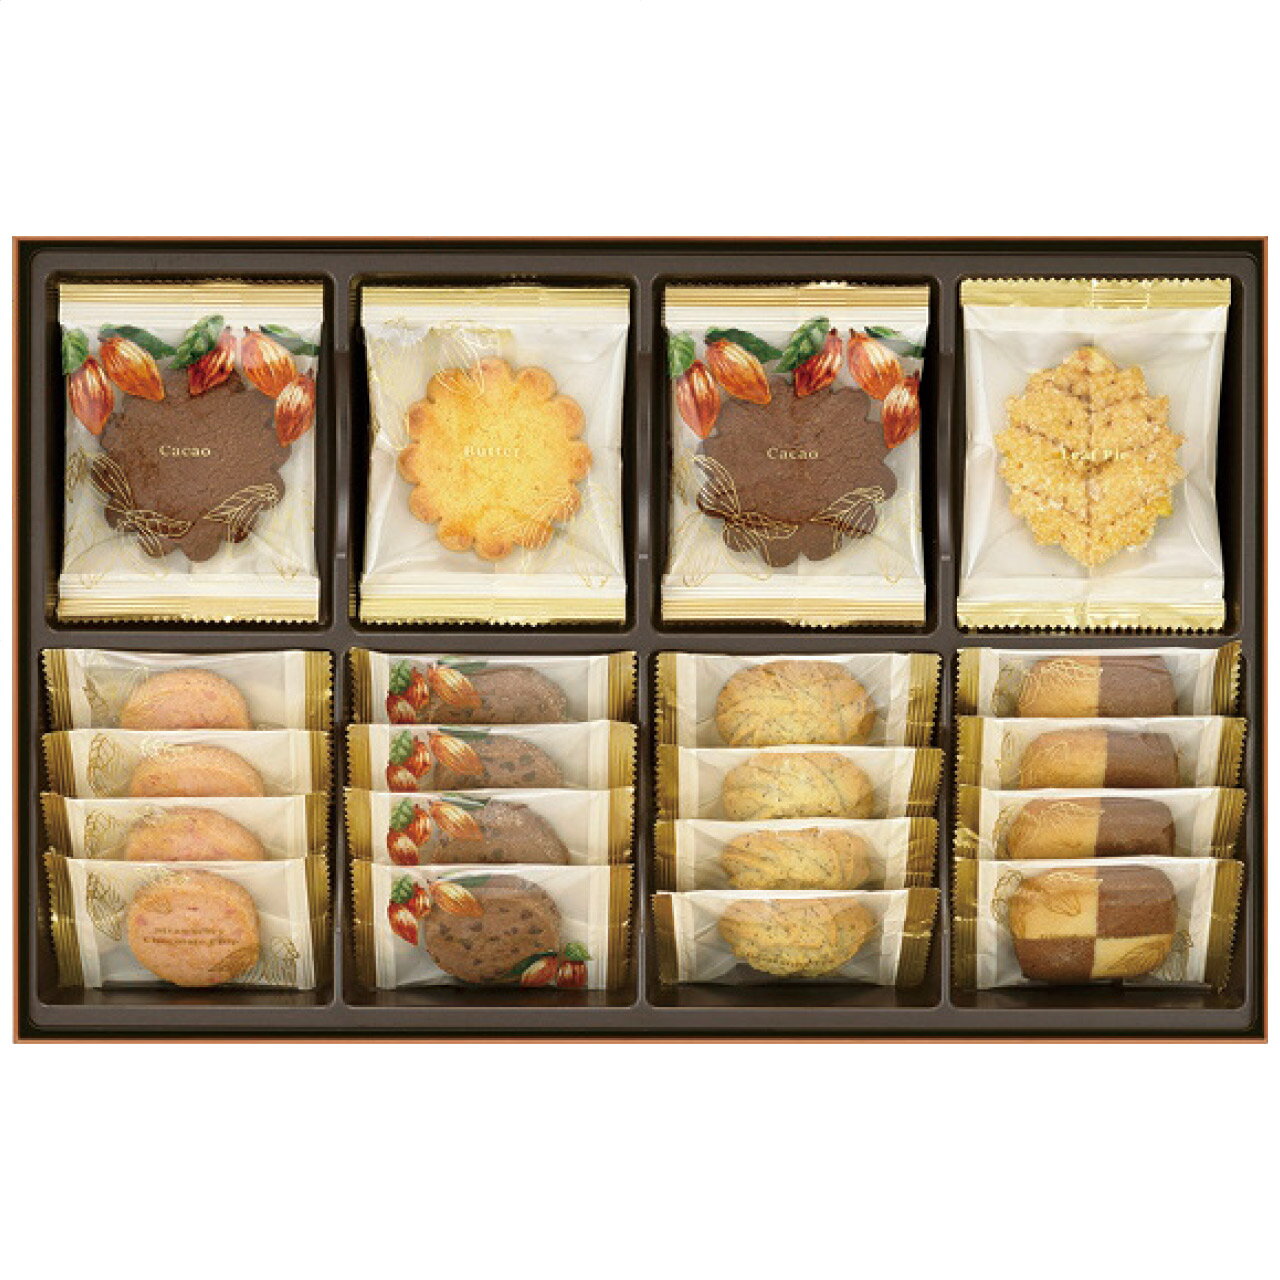 メリーチョコレート チョコレート詰め合わせ クッキーコレクション CC-N メリーチョコレート 日本製 [APD2192-021]| 洋菓子スイーツ・お菓子 洋菓子 洋菓子セット・詰め合わせ